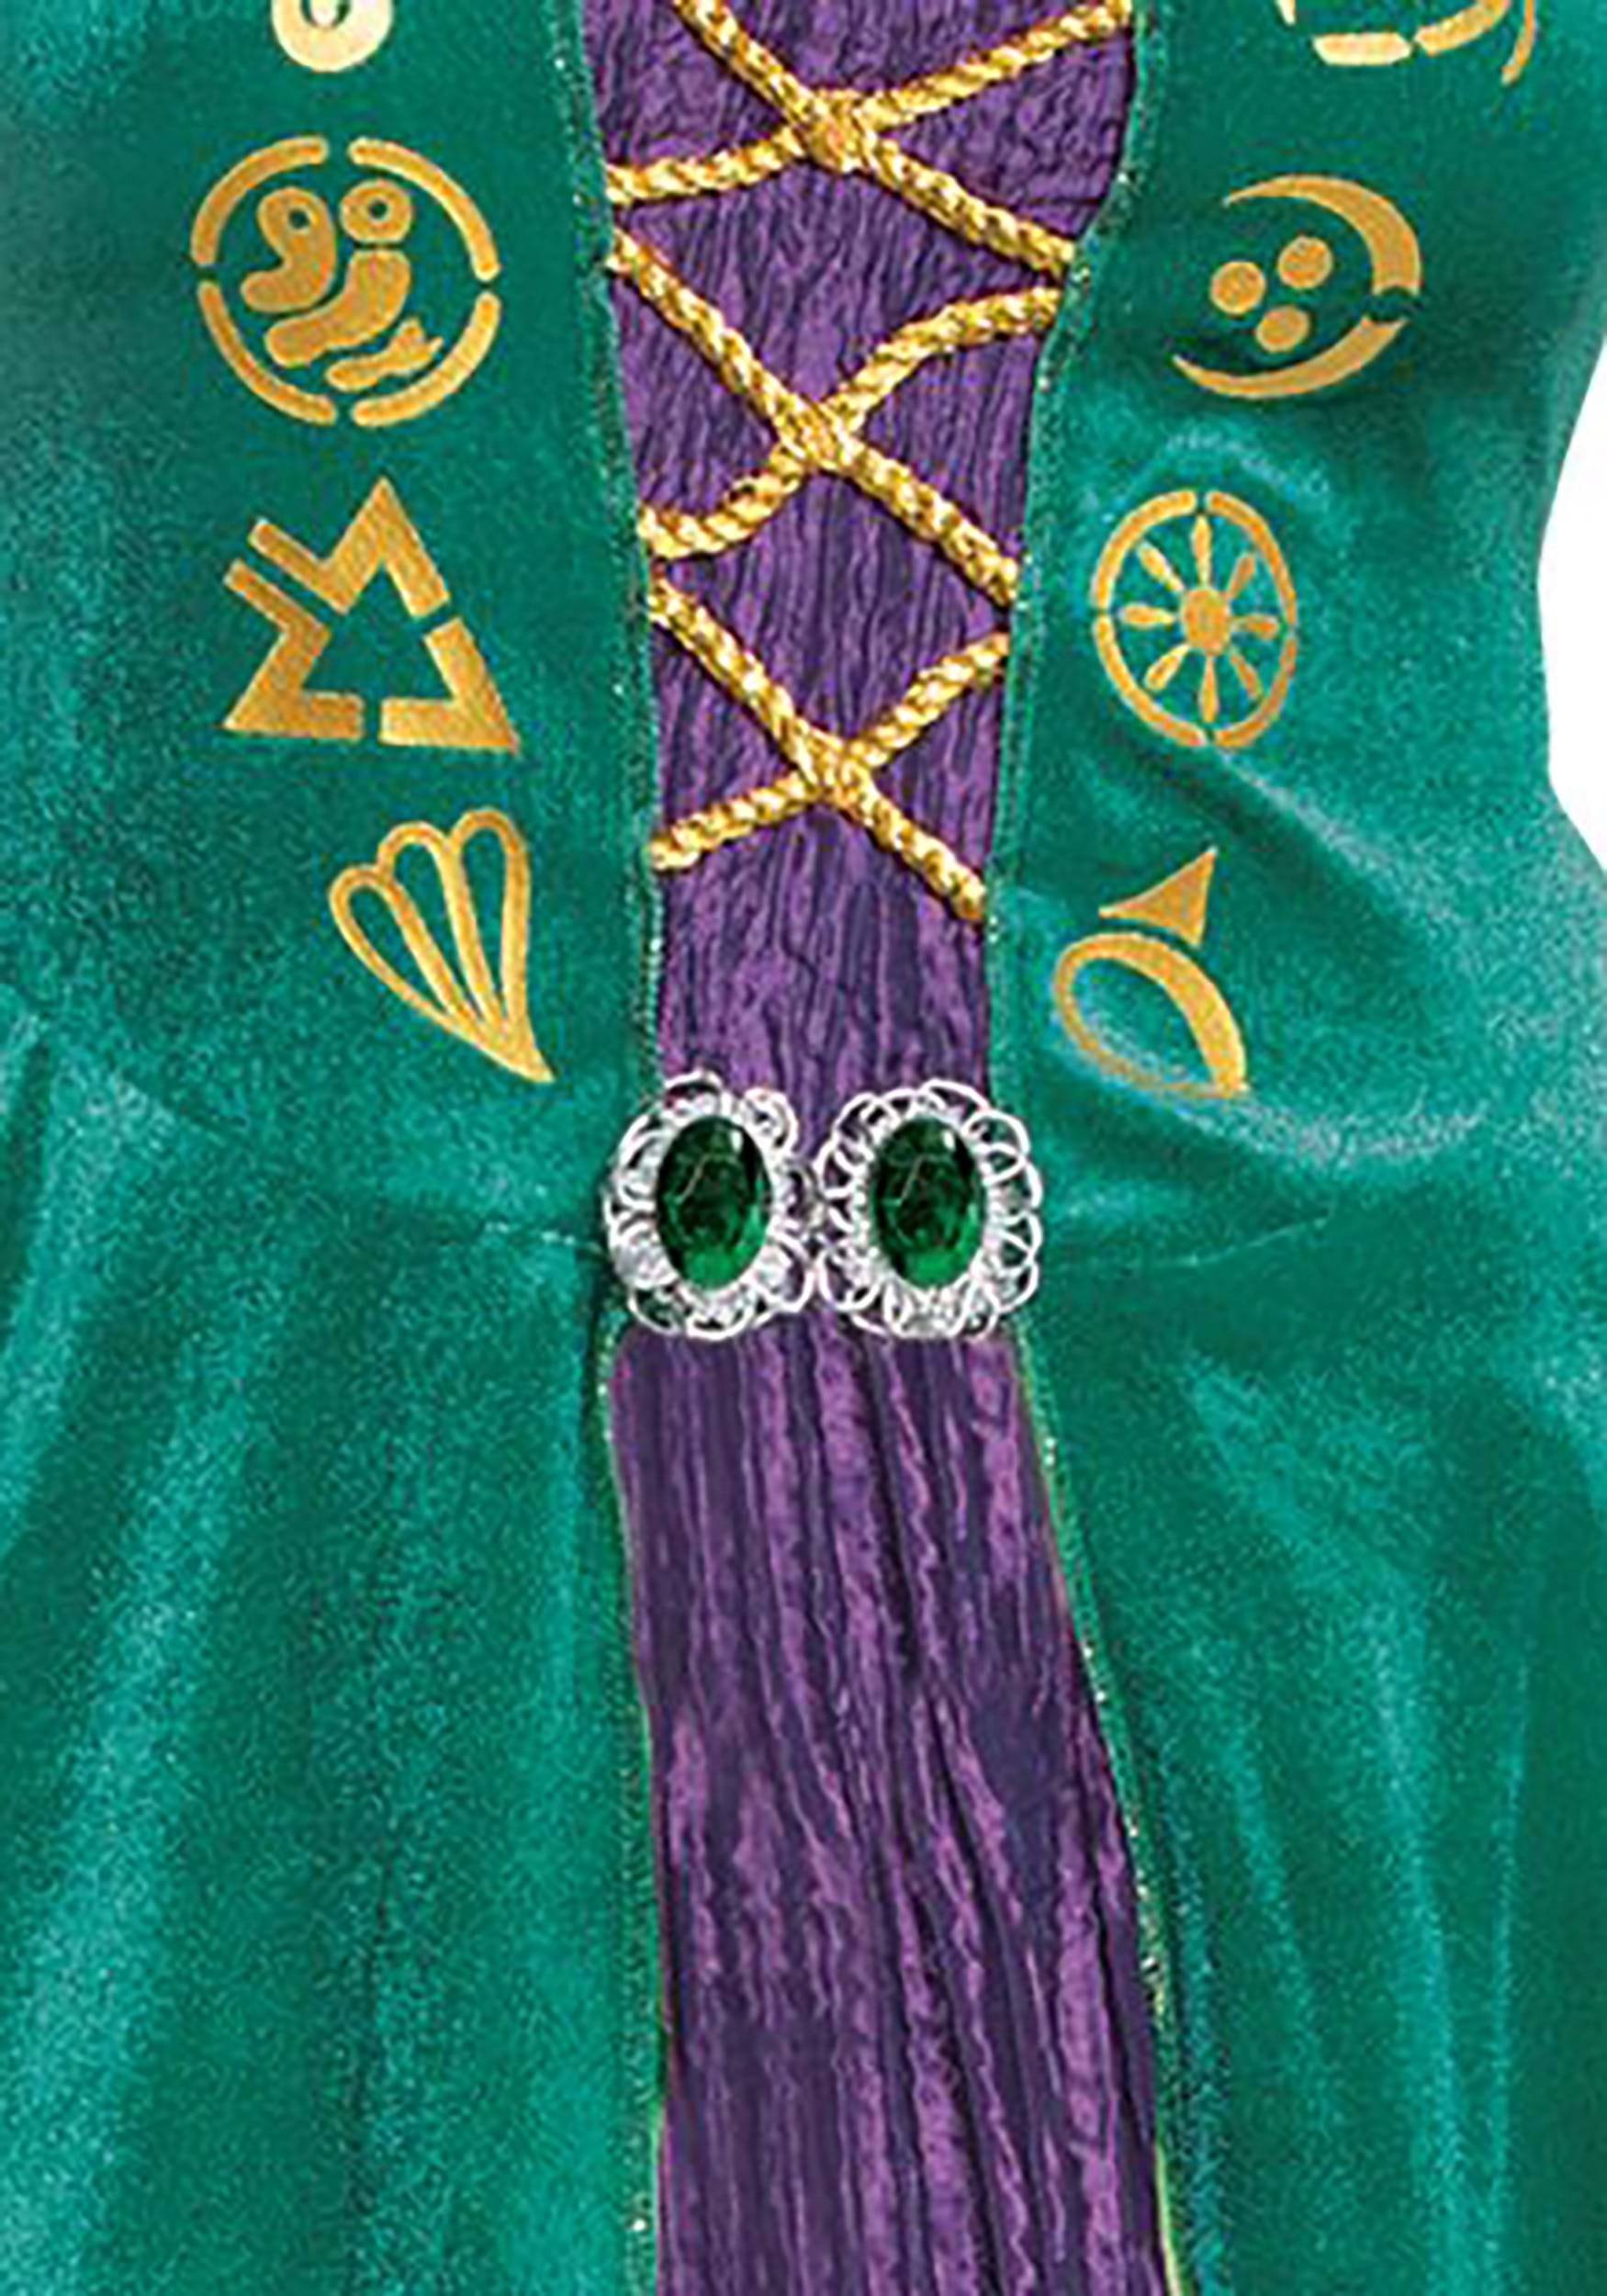 Hocus Pocus Deluxe Wini Women's Costume Dress , Disney Costumes